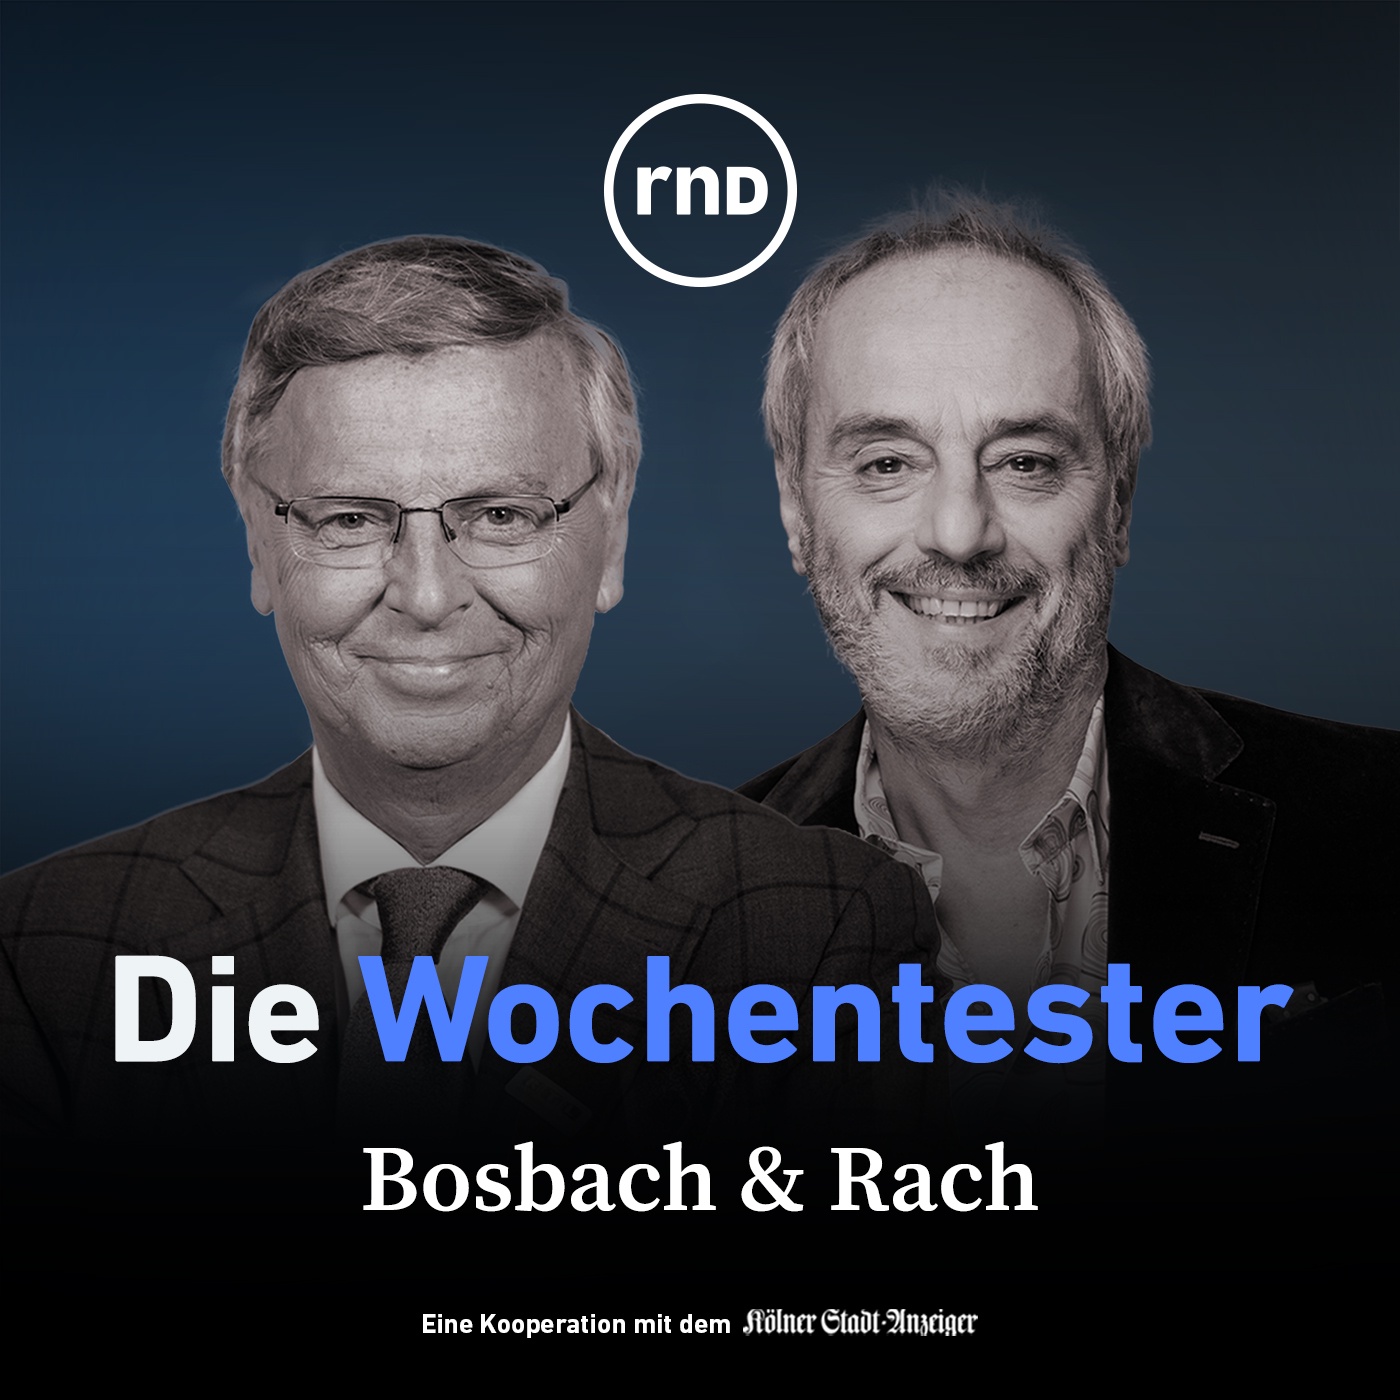 Bosbach & Rach - mit Manuel Frondel, Enzo Weber und Ingo Froböse